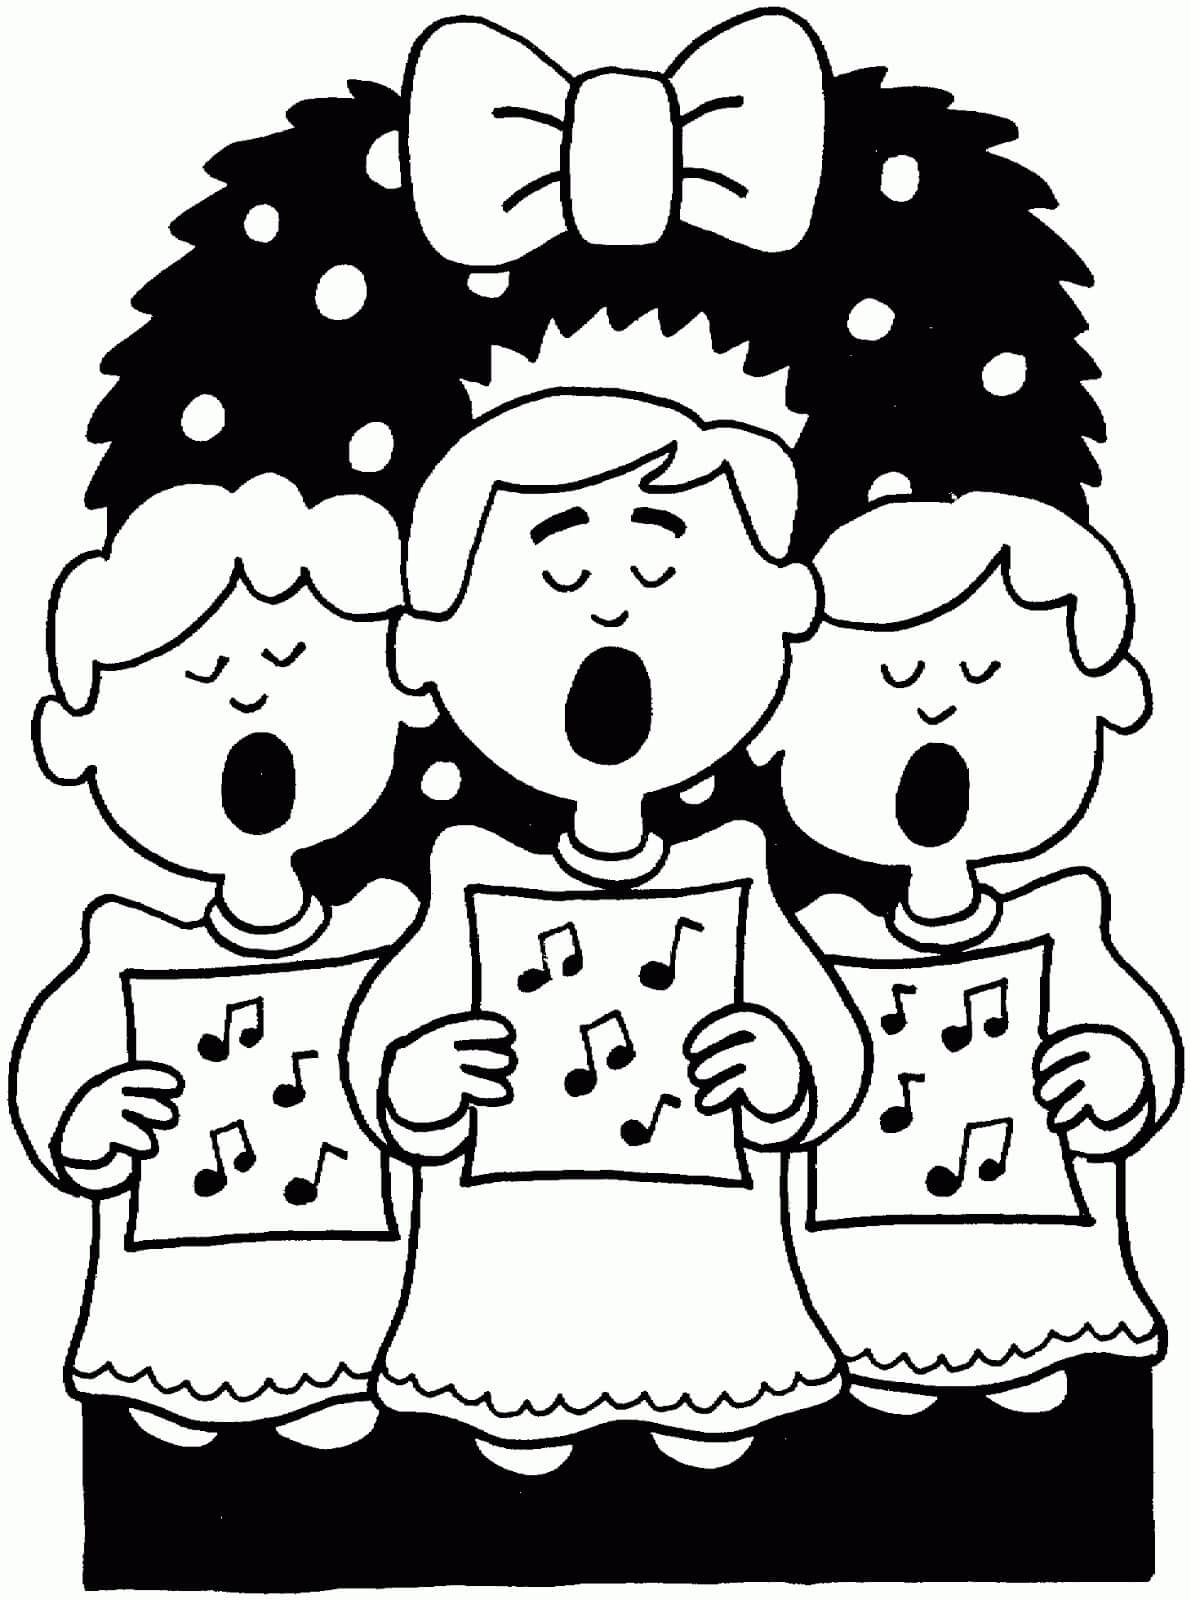 Cantando a Canção de Natal para colorir